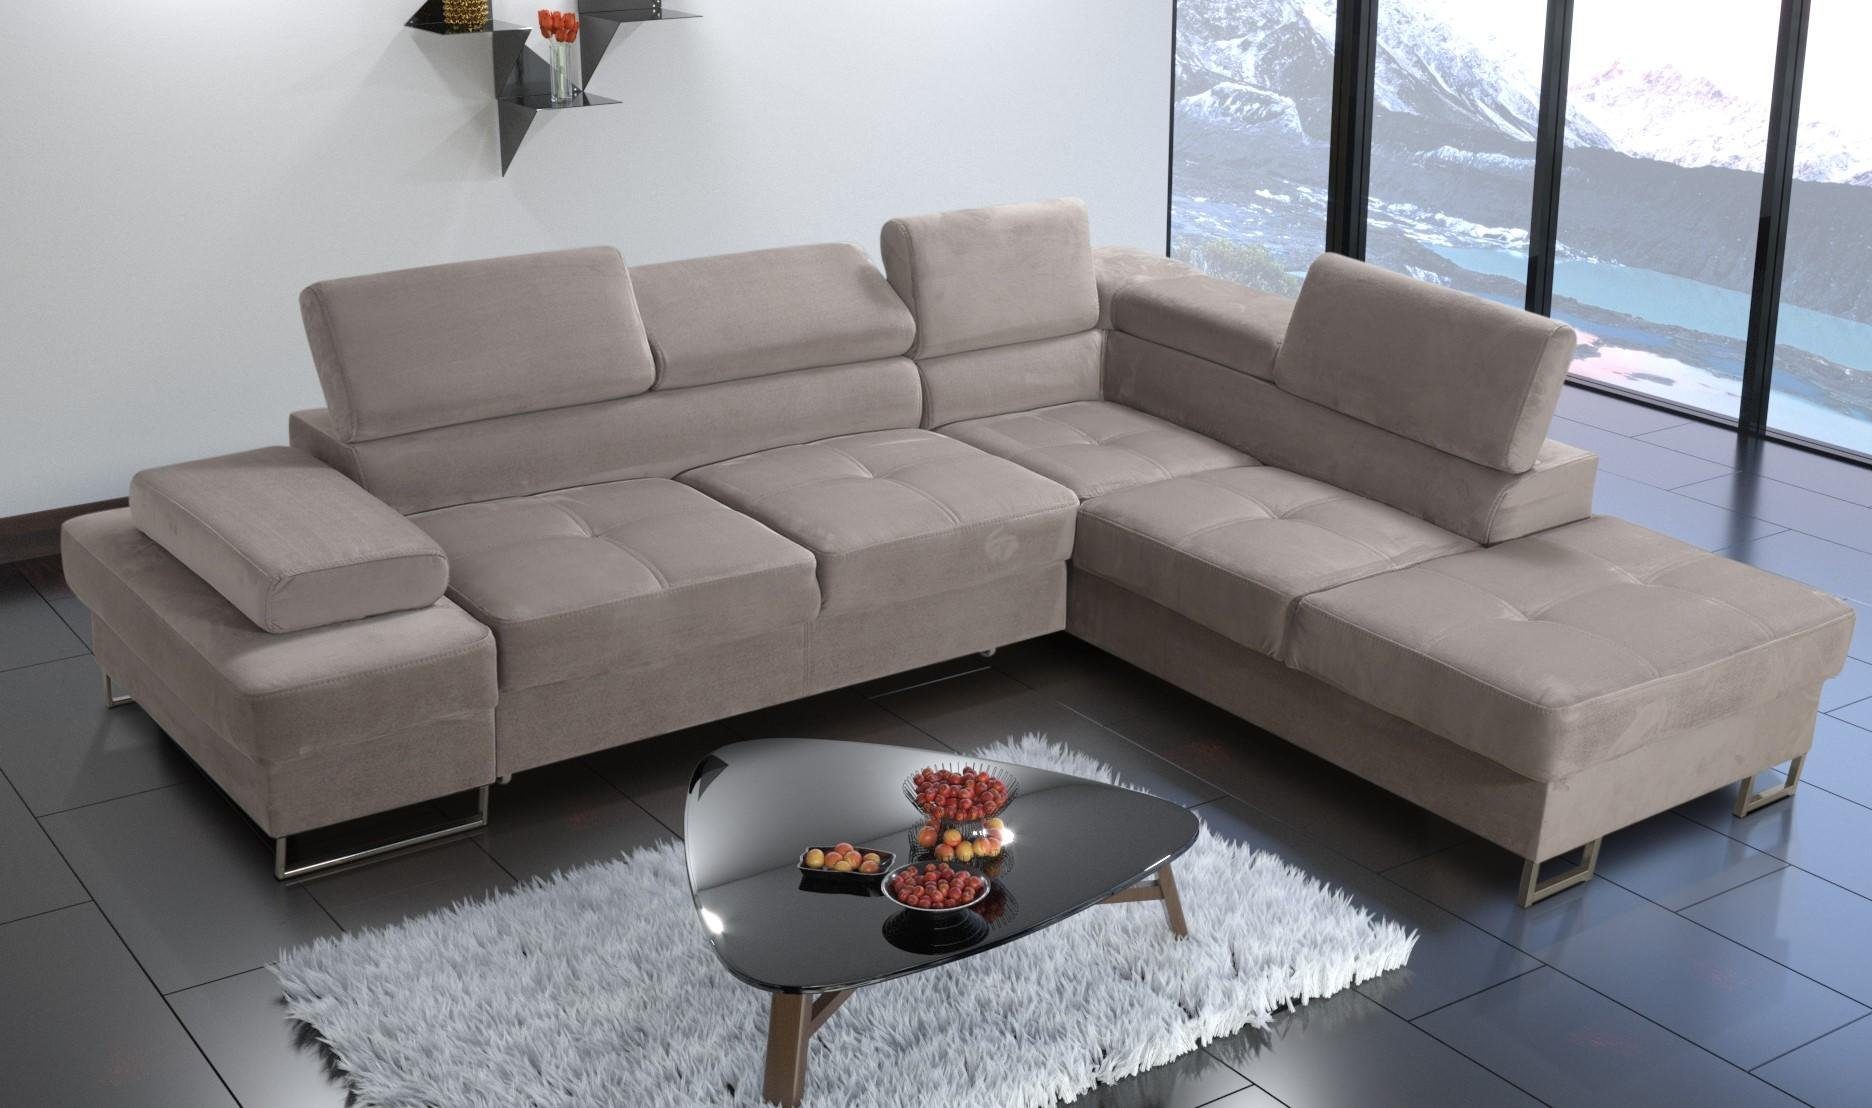 JVmoebel Ecksofa, Ecksofa gelb L-Form Wohnzimmer Couch Modern Polsterung Beige Textil